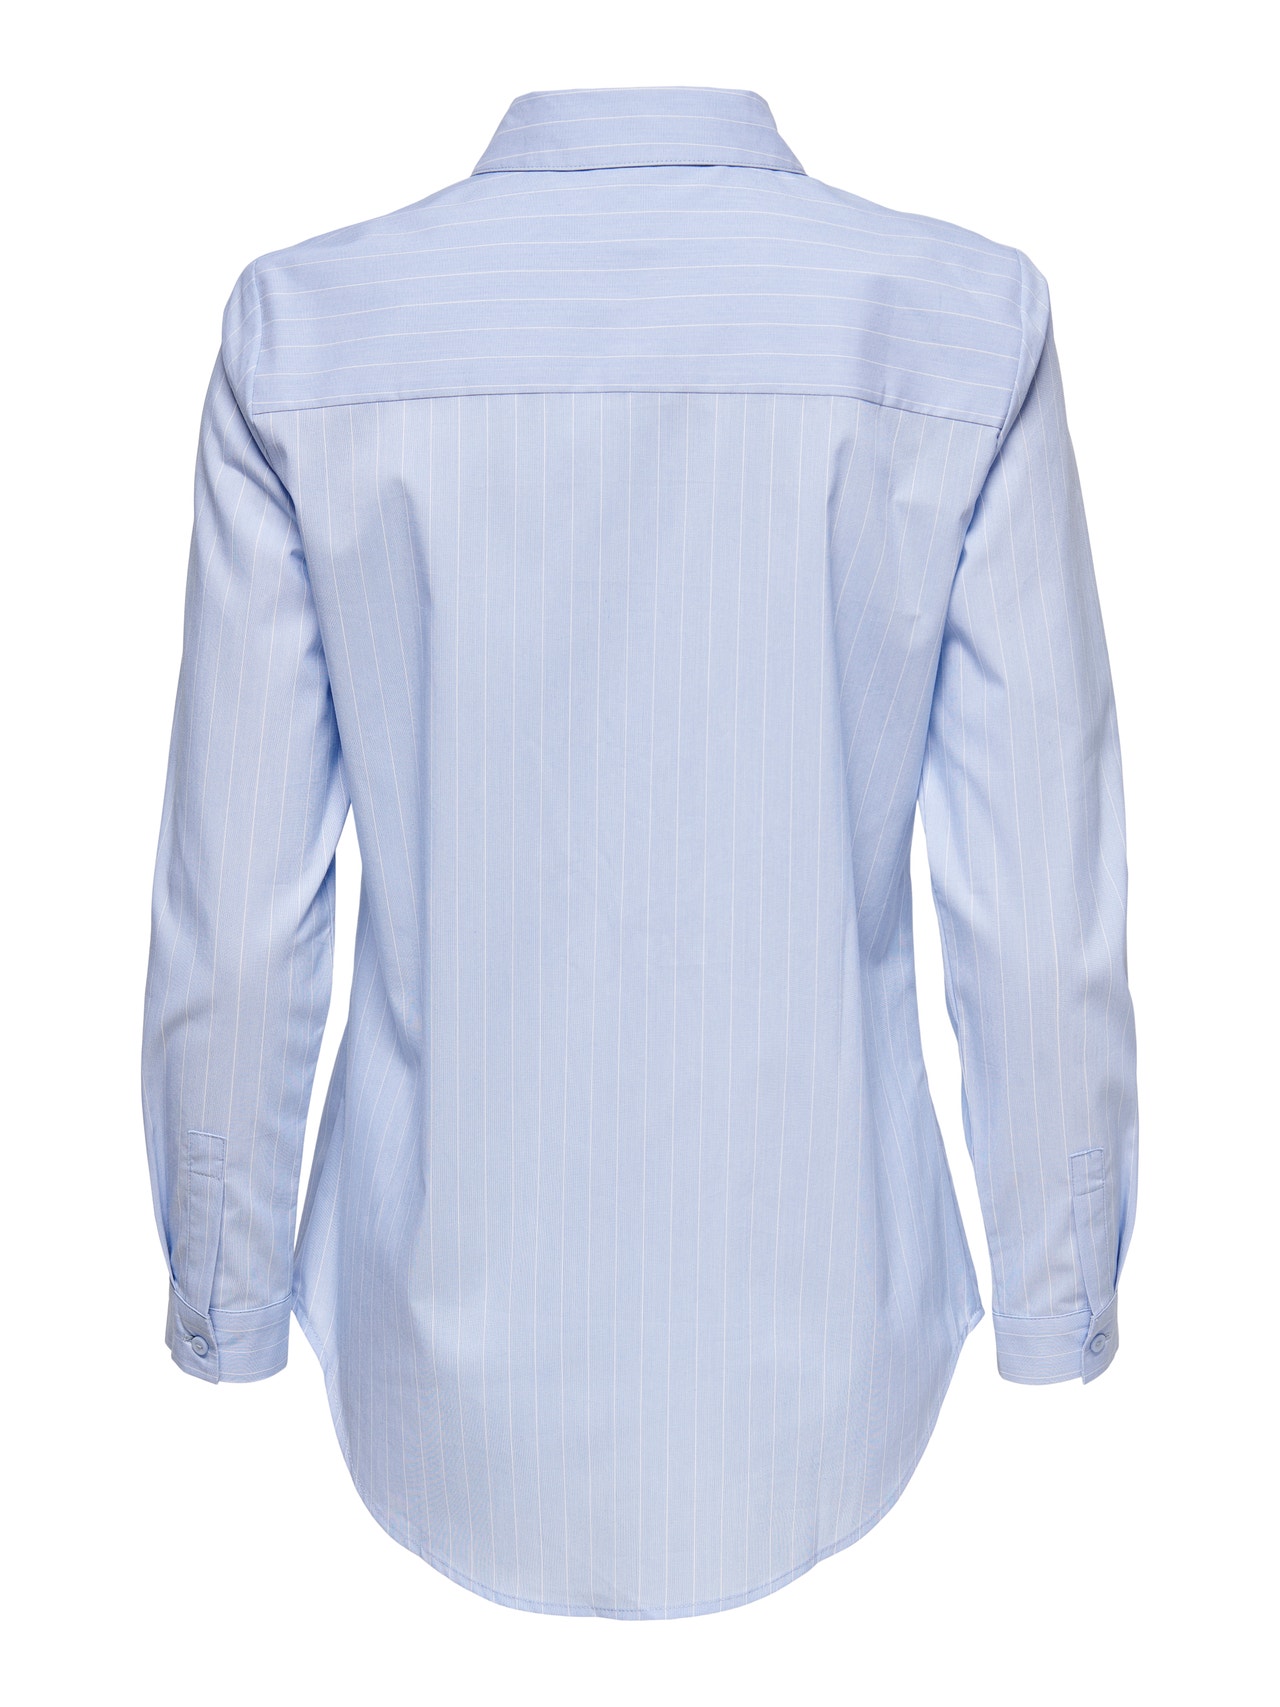 ONLY Chemises Regular Fit Col chemise Poignets boutonnés Manches fines et ajustées -Cashmere Blue - 15149877